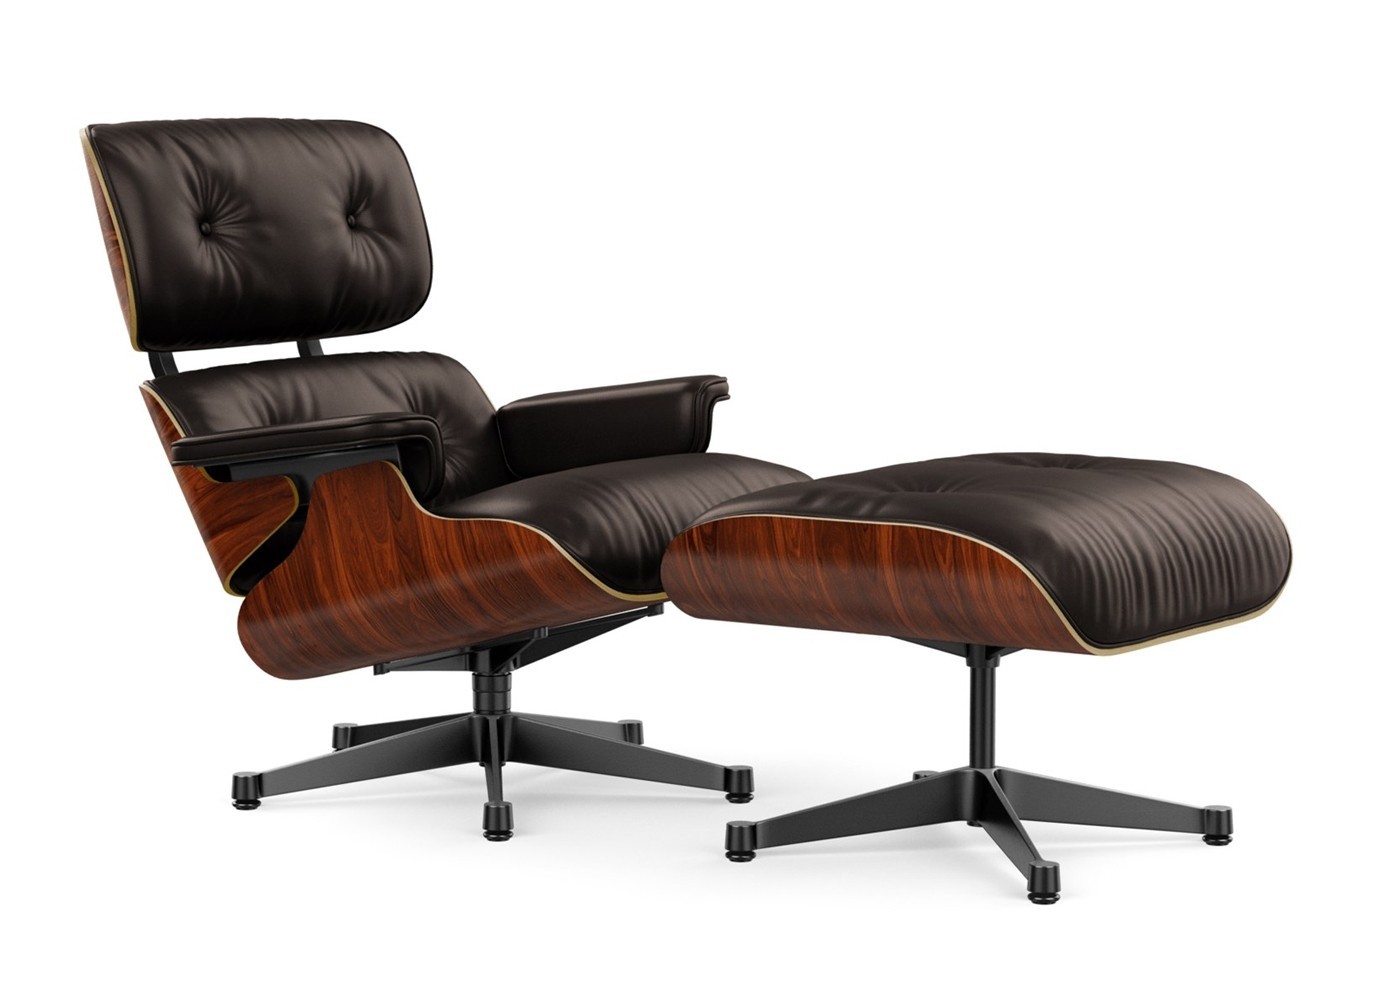 bodem Betekenisvol Naar behoren Vitra Eames Lounge Chair & Ottoman | Buy Online at Deplain.com